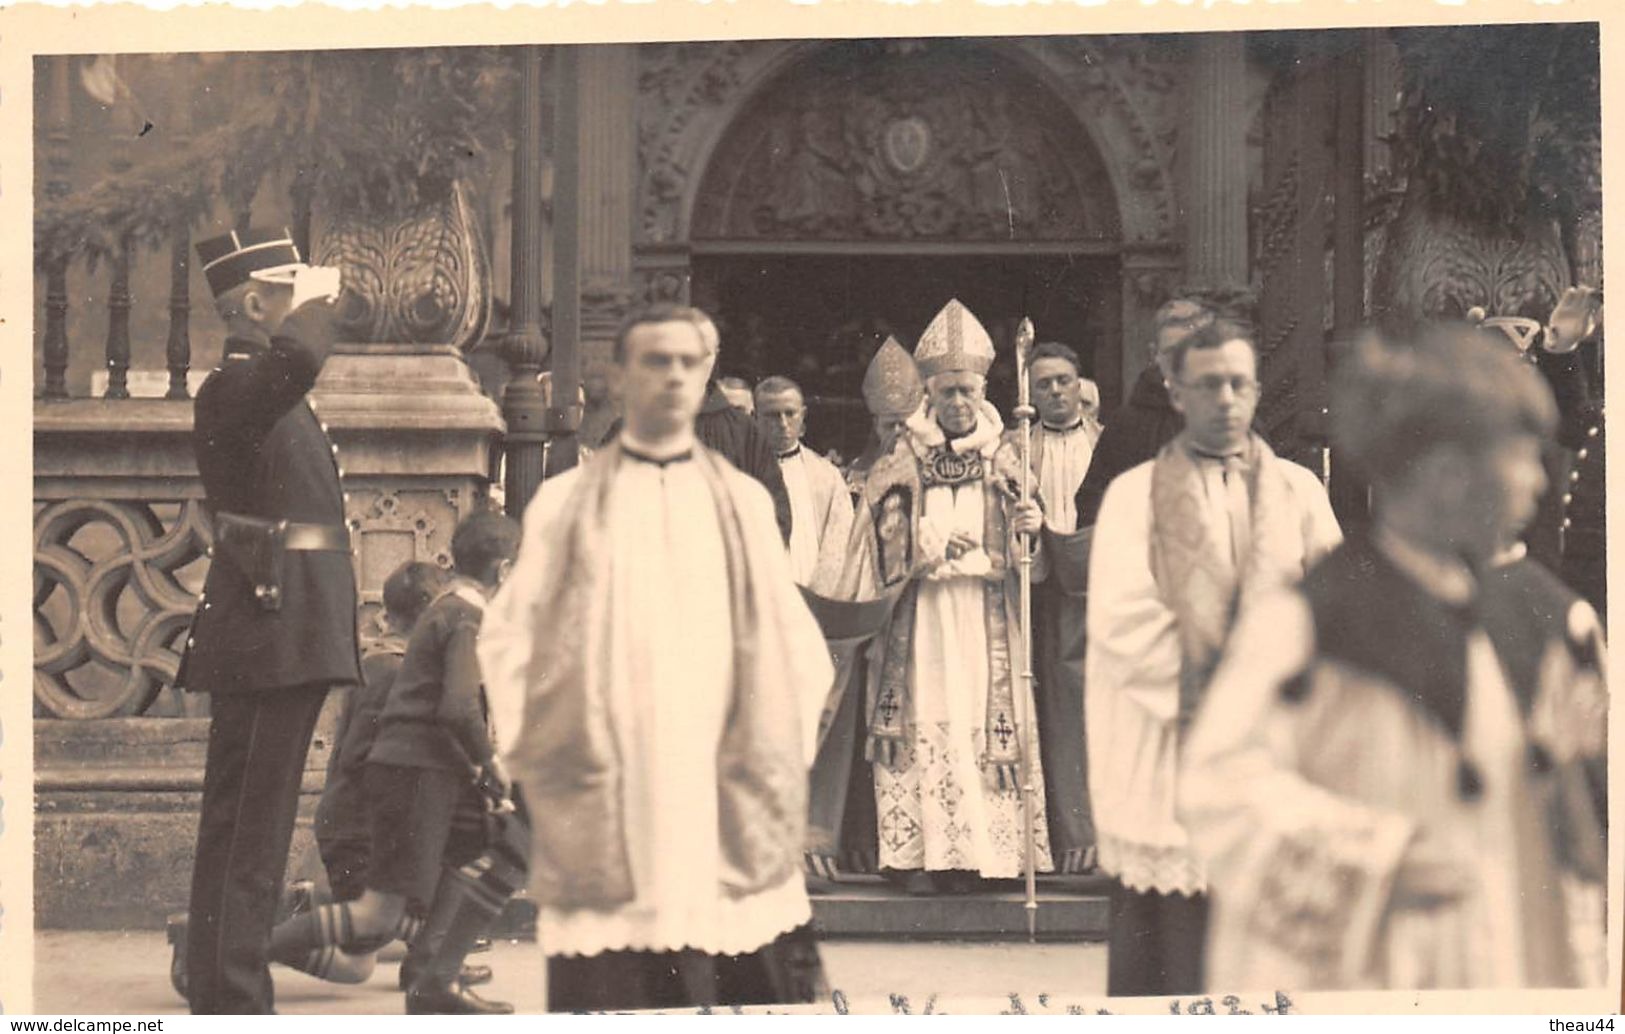 ¤¤  - LUXEMBOURG  -  Lot de 6 Cartes-Photos  - Le Cardinal VERDIER en 1934  - Religion, Commémoration   -  ¤¤